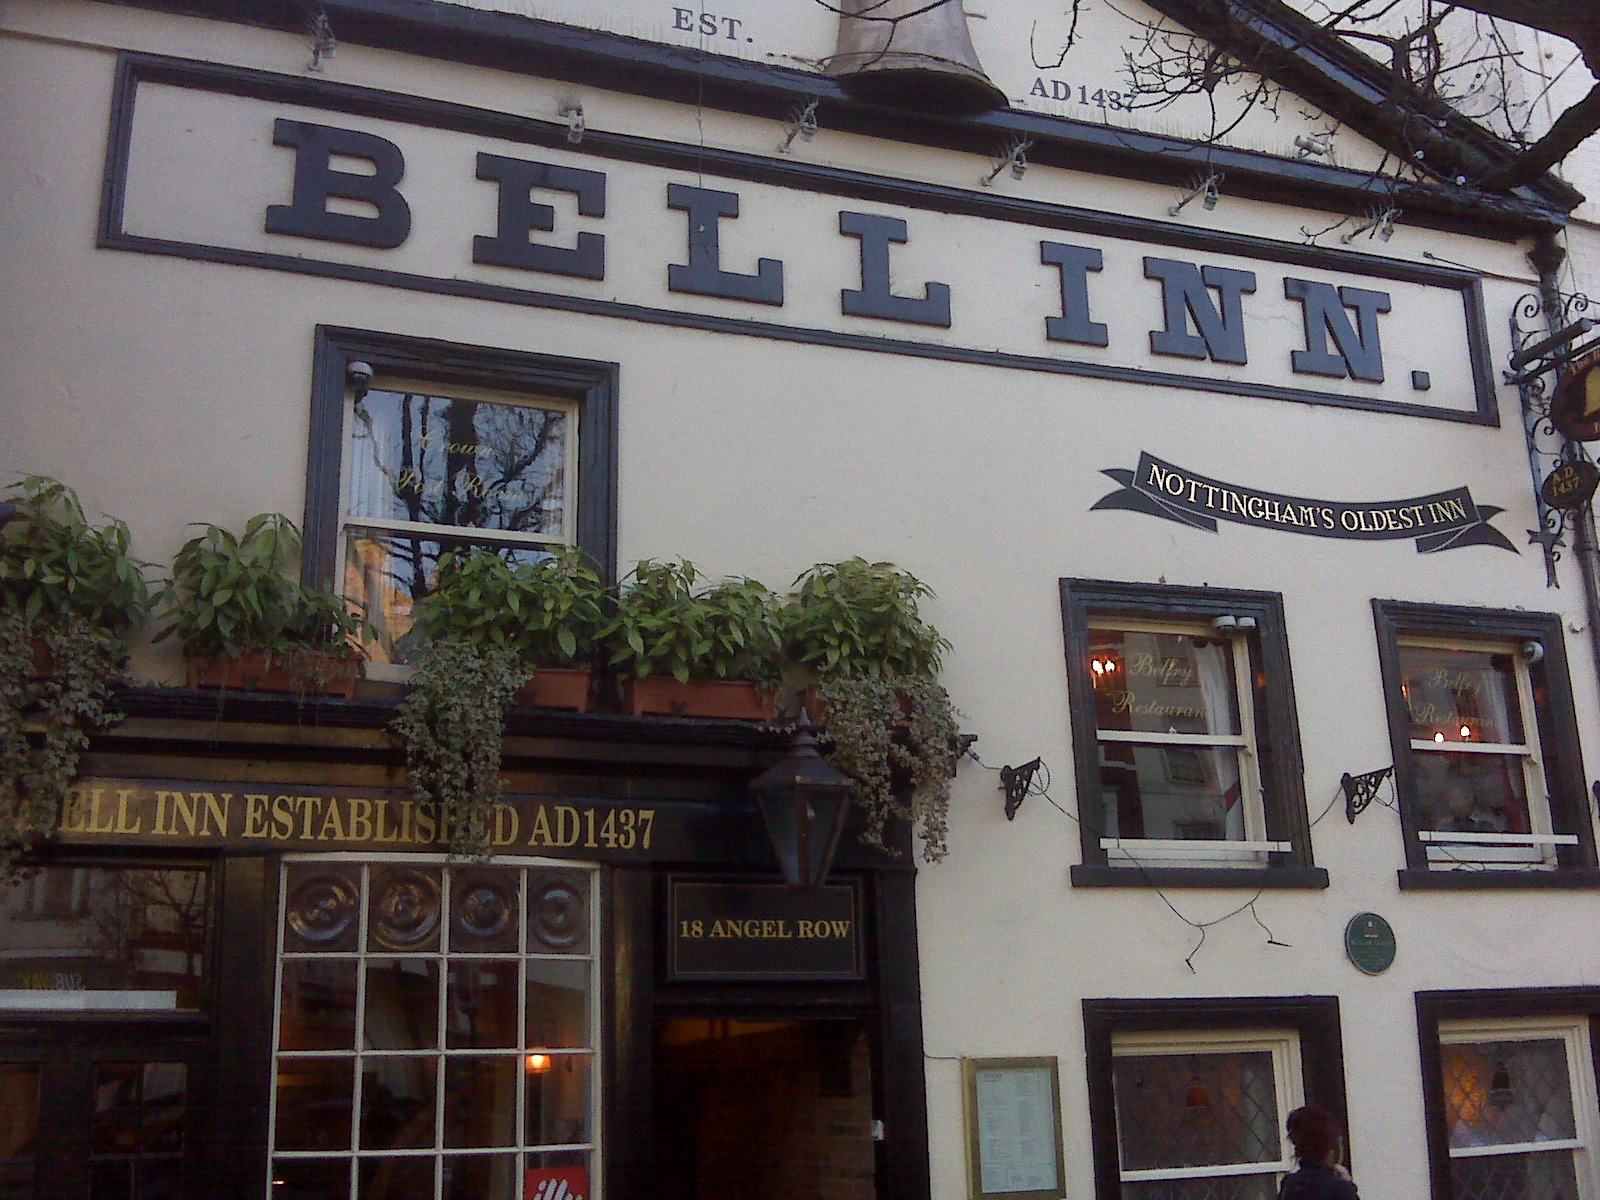 Outside the Bell Inn, Nottingham